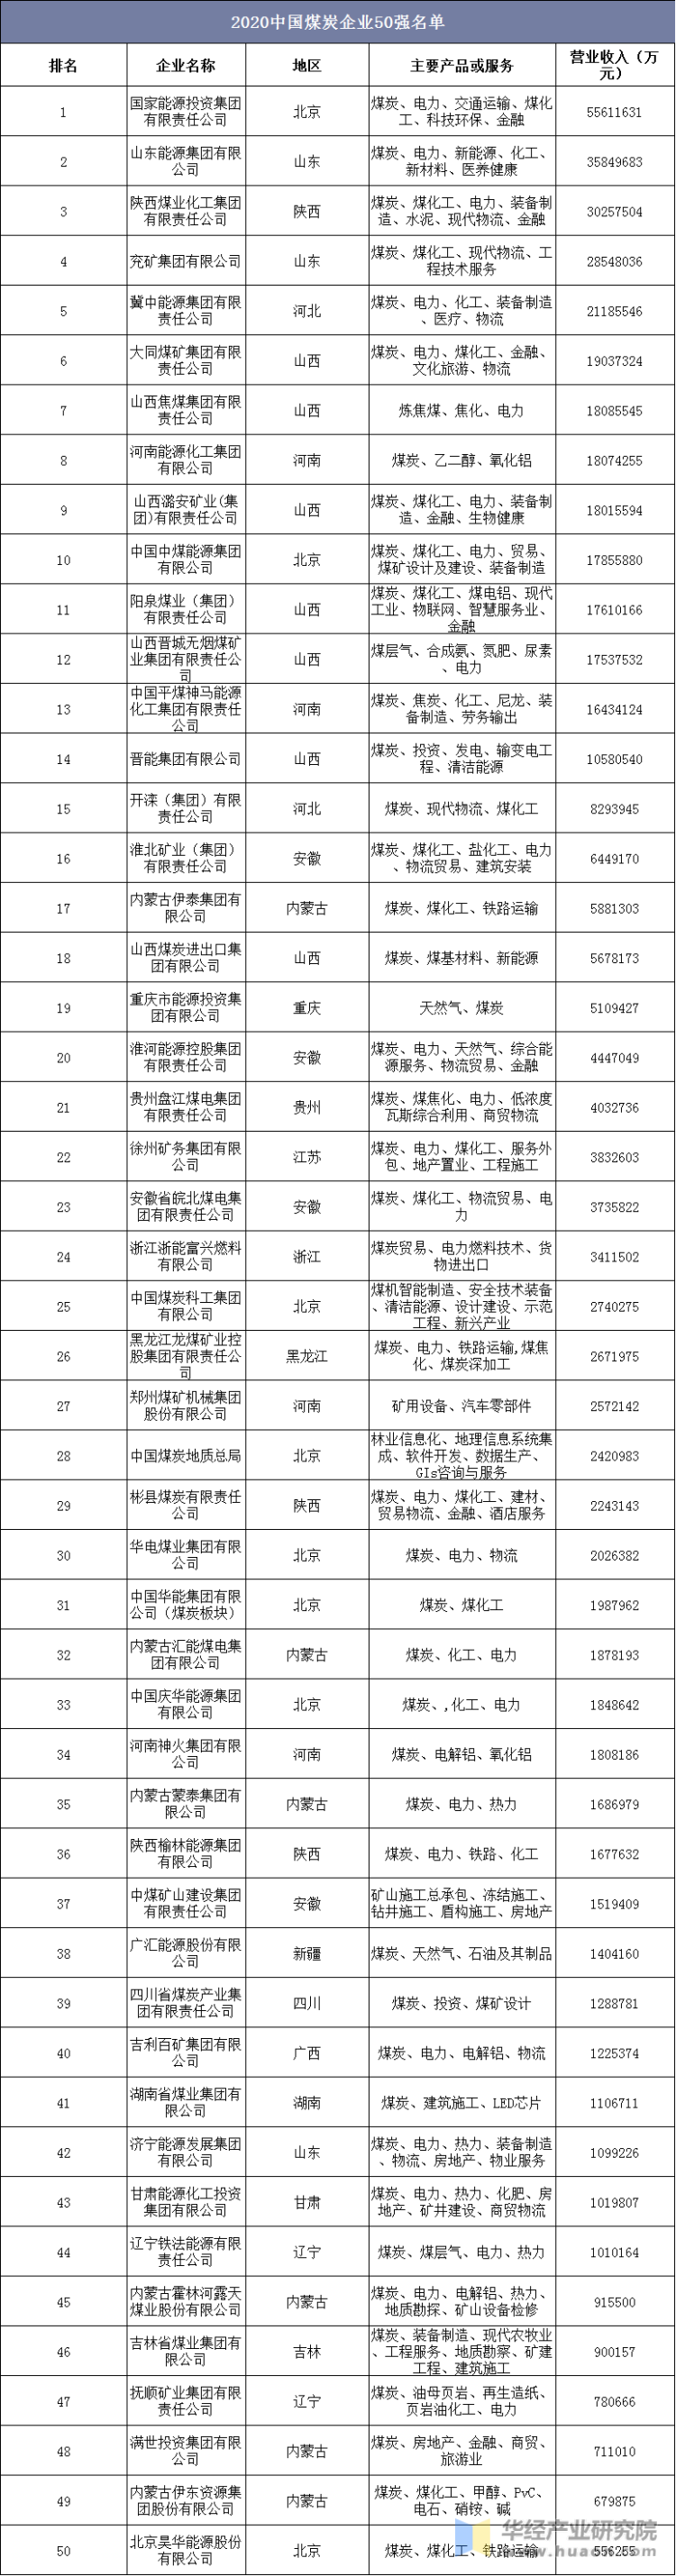 2020中国煤炭企业50强名单